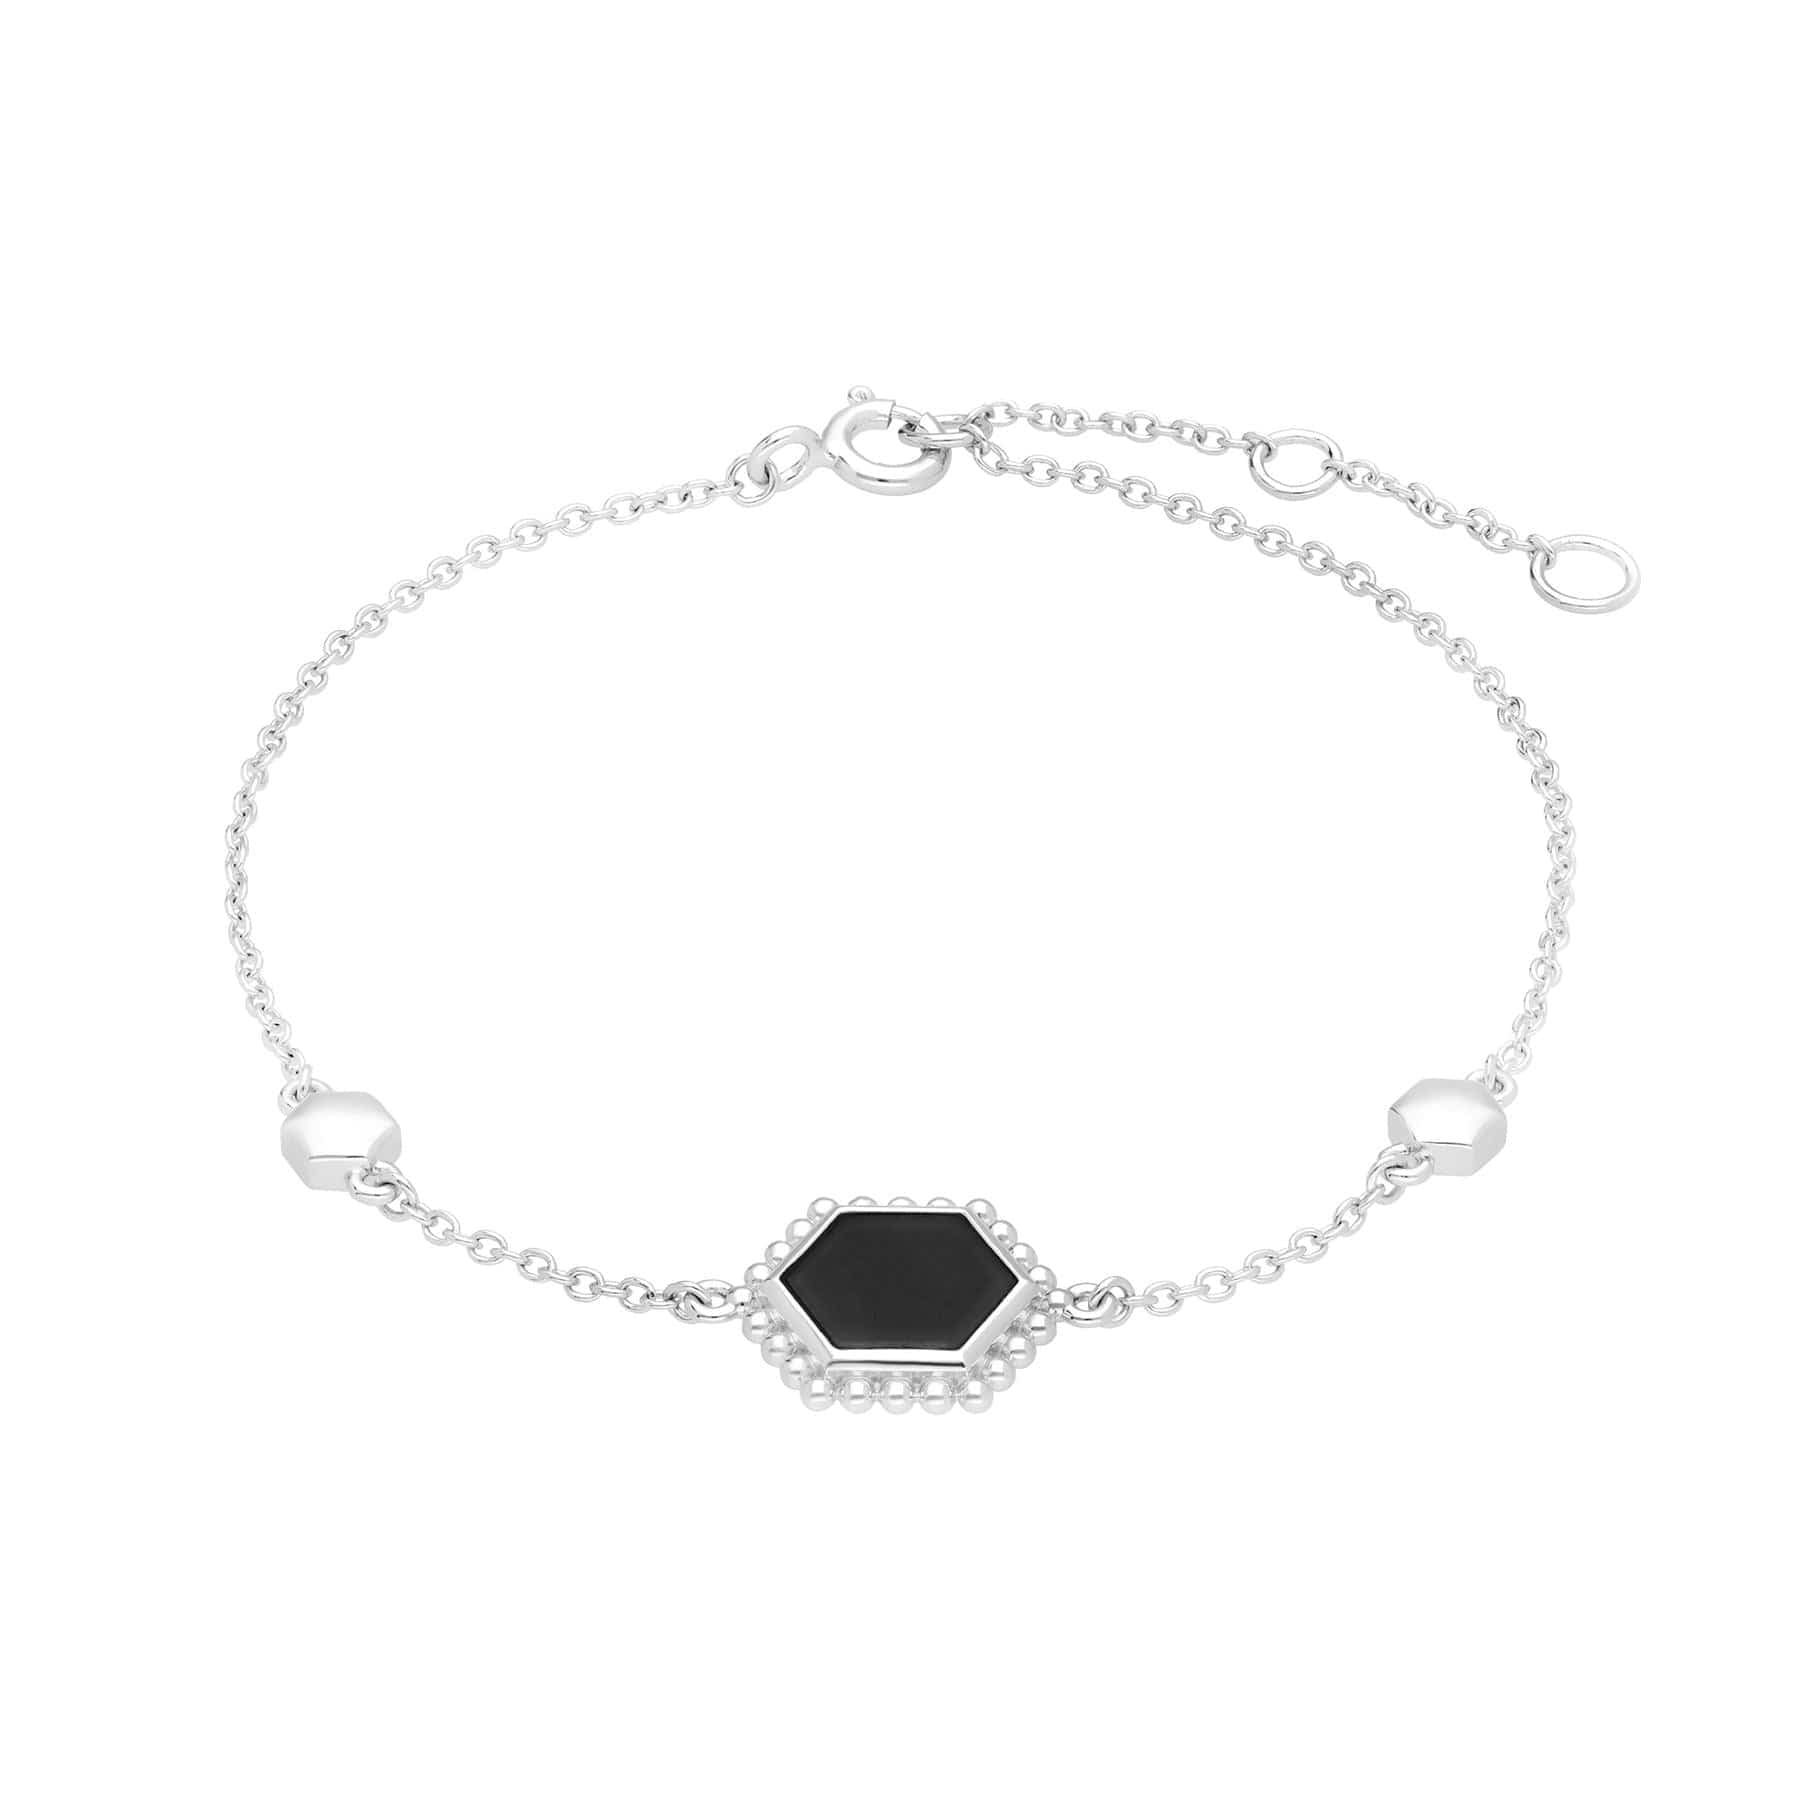 Black Onyx Slice Chain Bracelet in 925 Sterling Silver